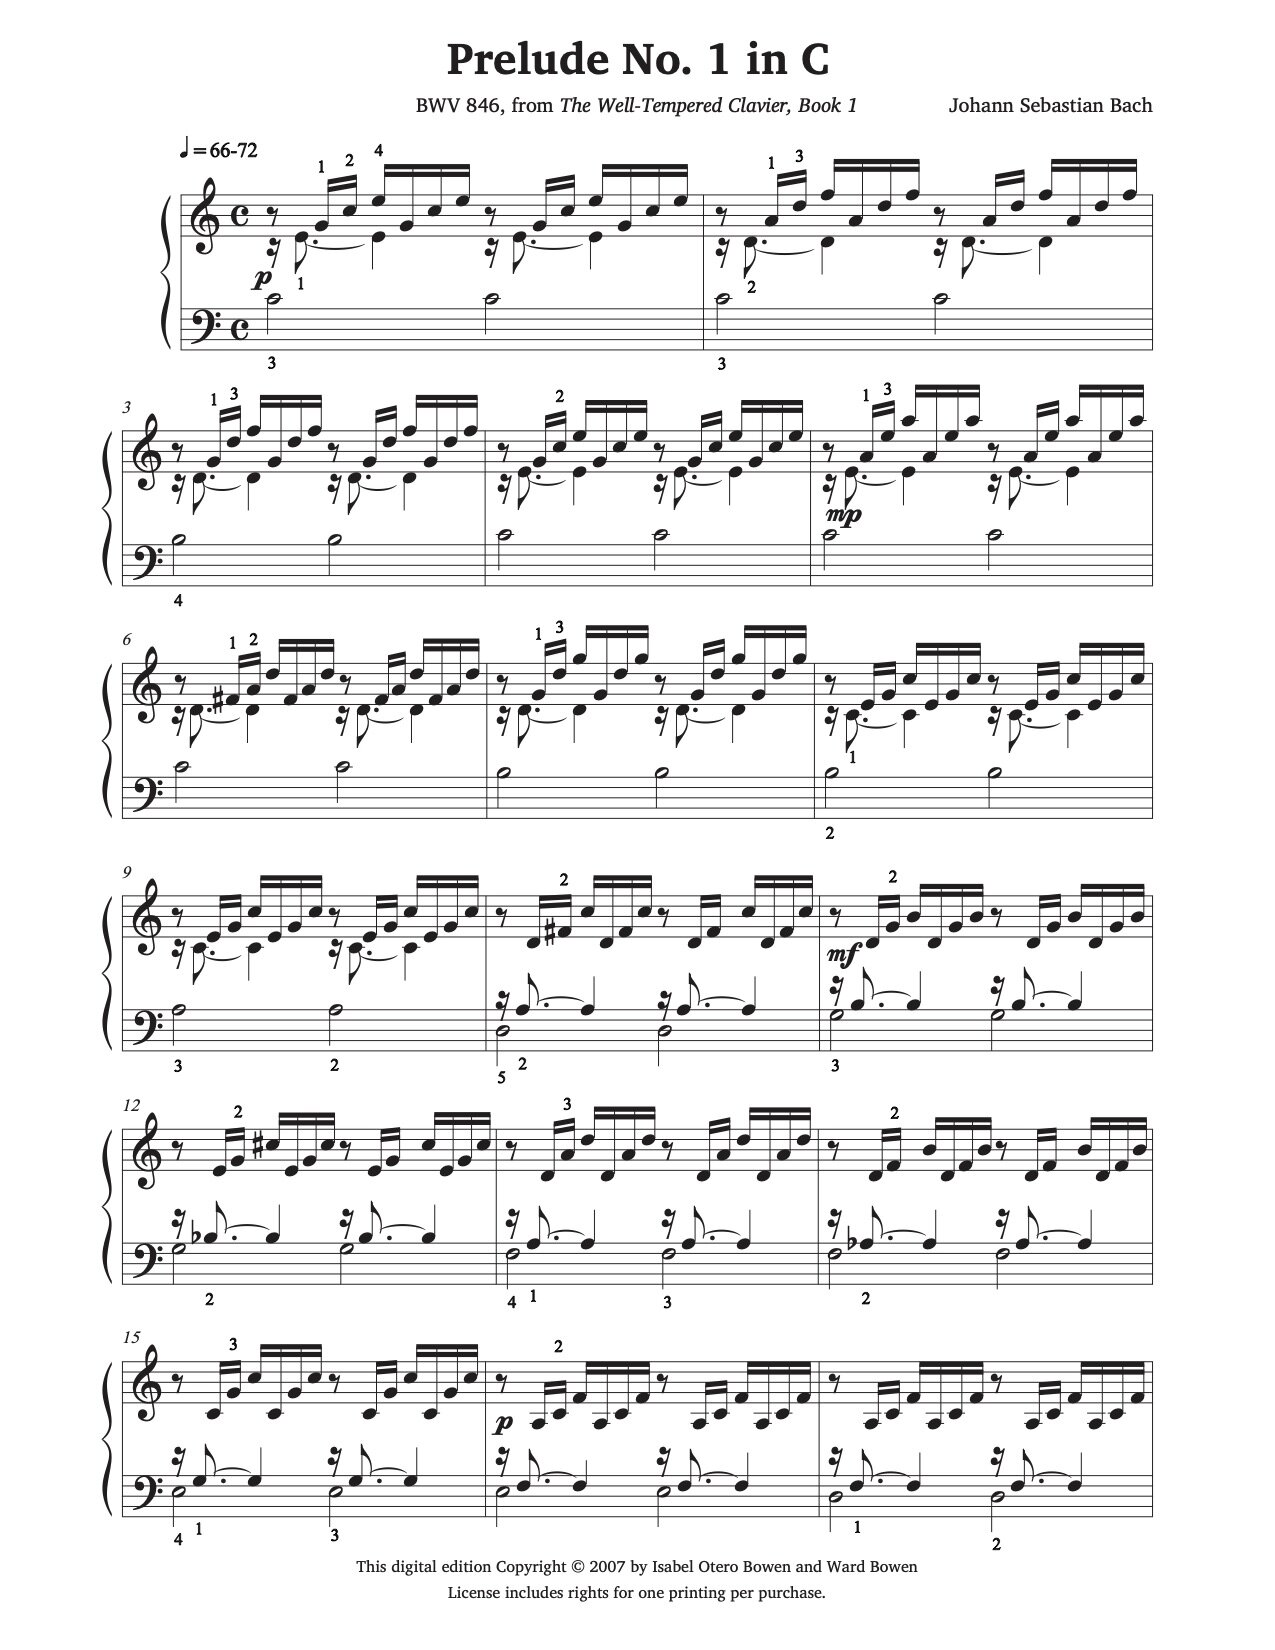 Piano　No.　Bach　by　Bowen　—　Prelude　C　in　Studio